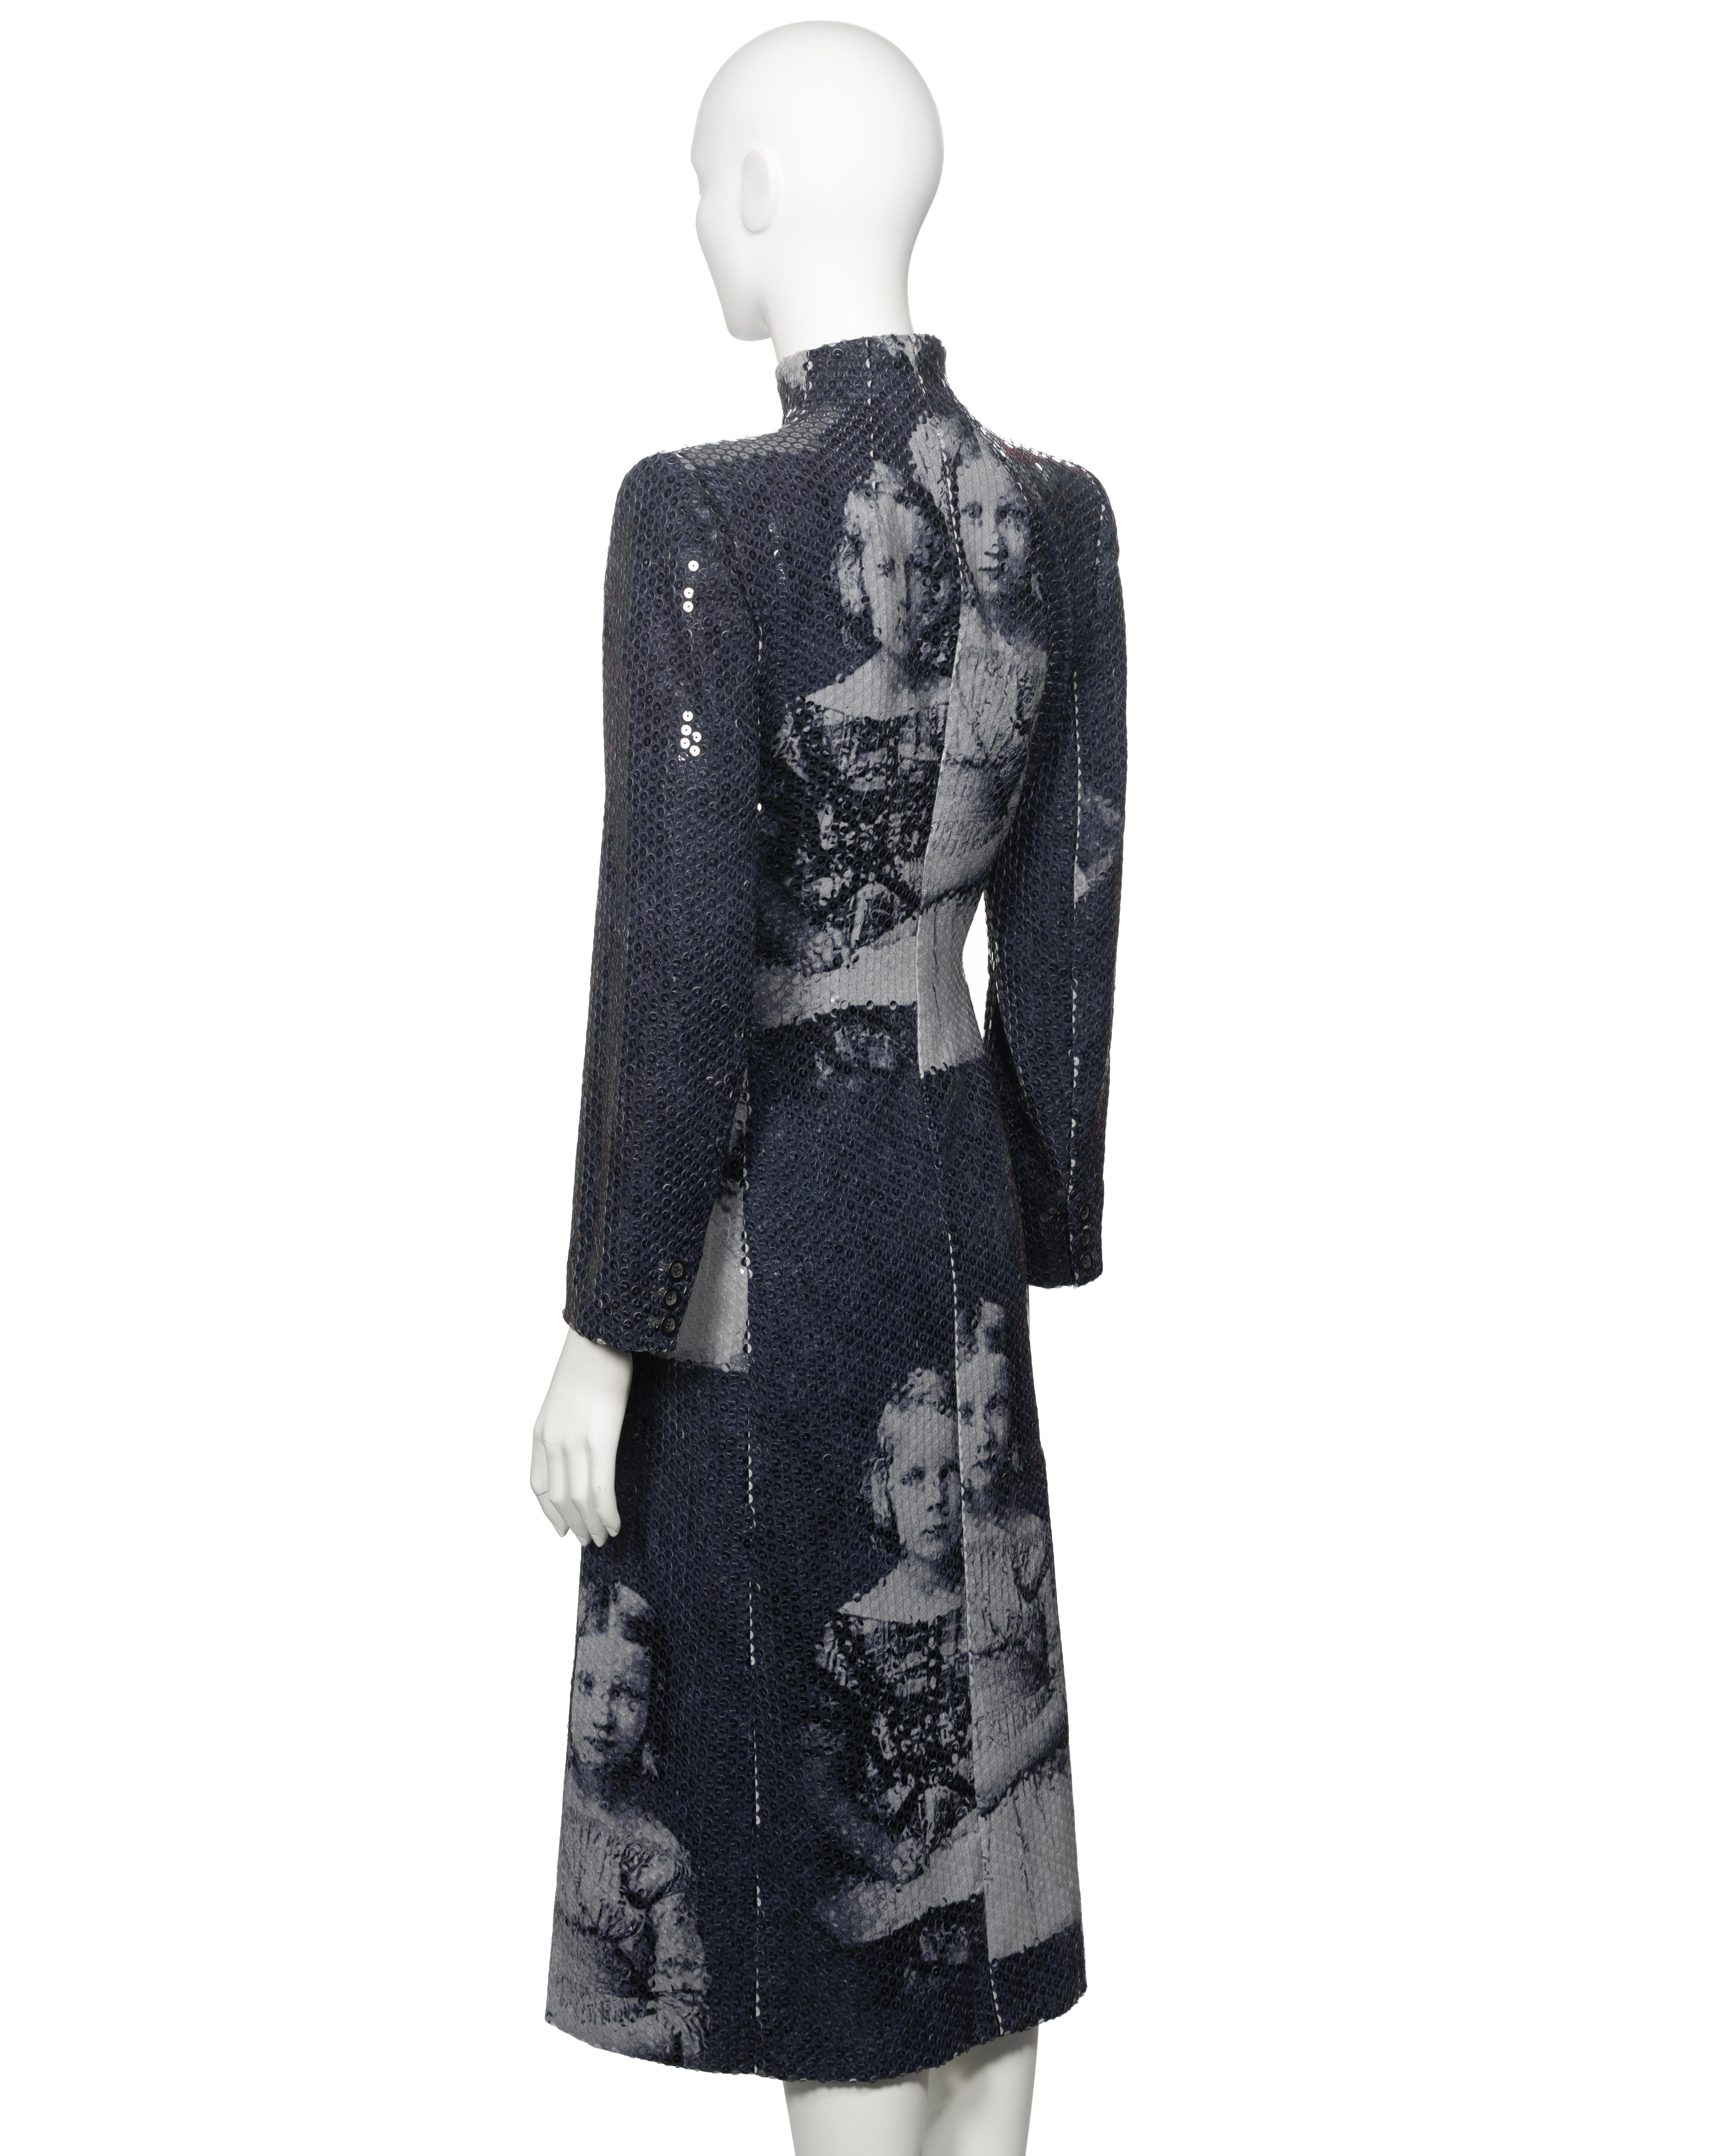 Alexander McQueen Sequin 'Joan' Evening Coat, fw 1998 For Sale 4